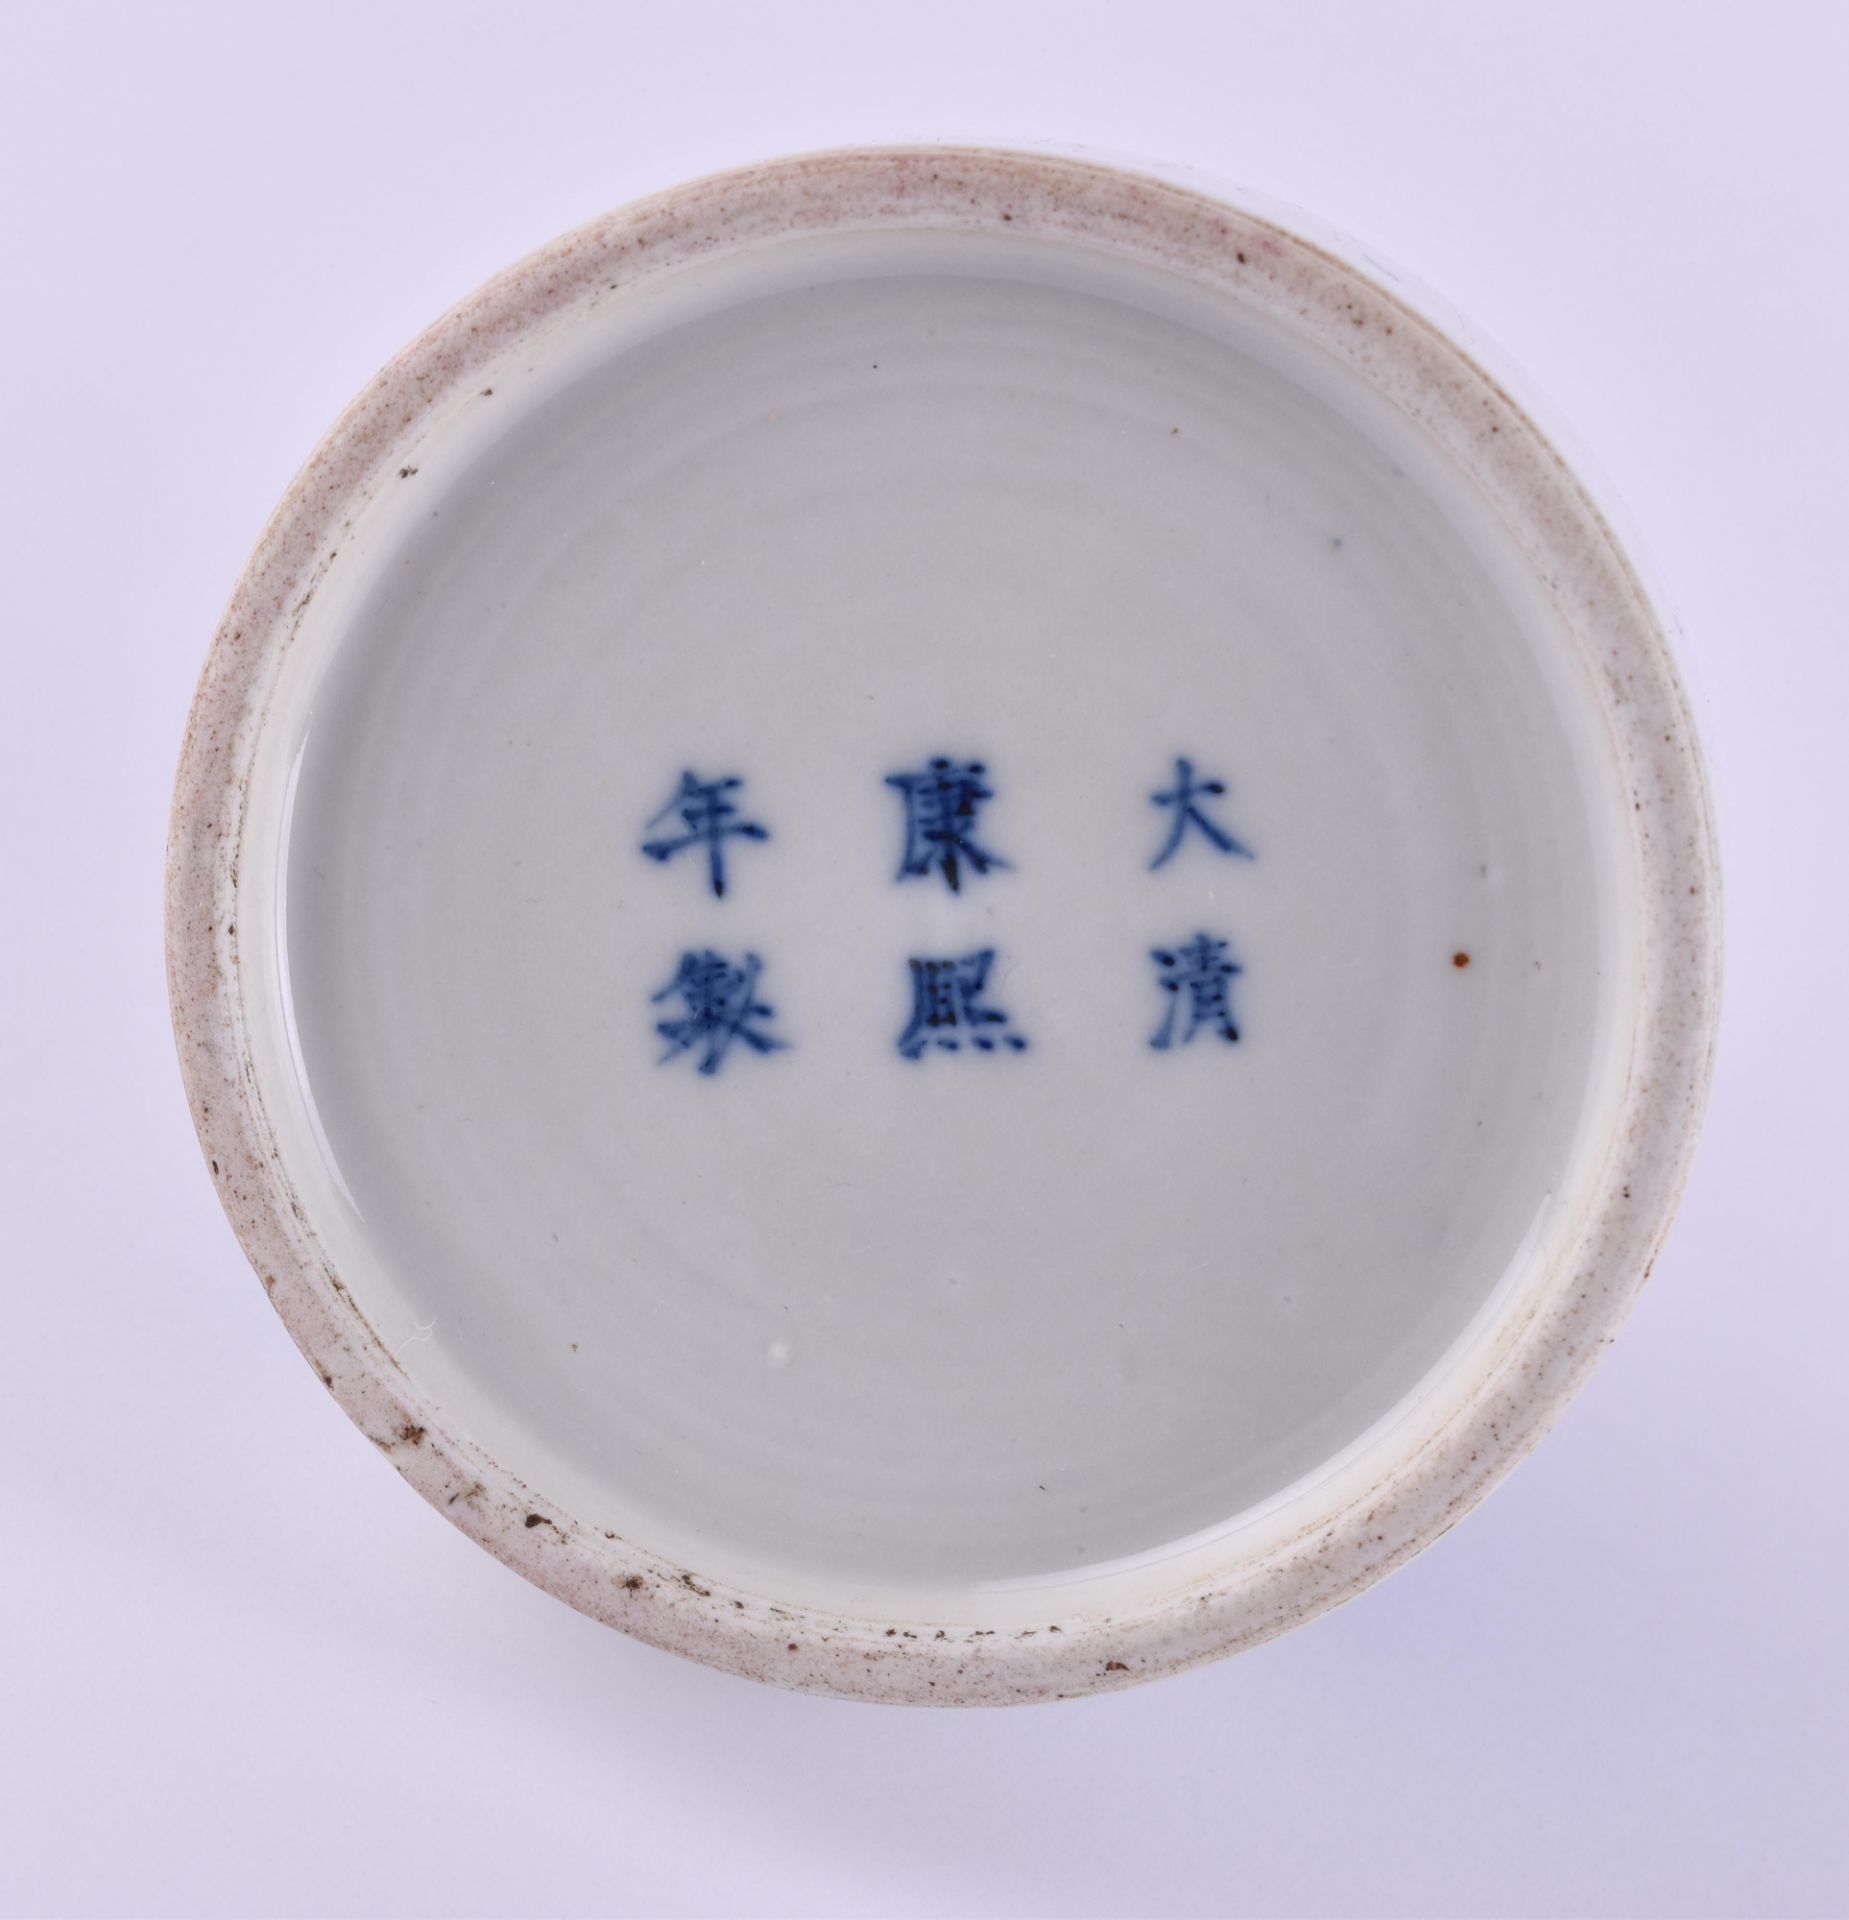 Vase China Qing dynasty - Image 5 of 5